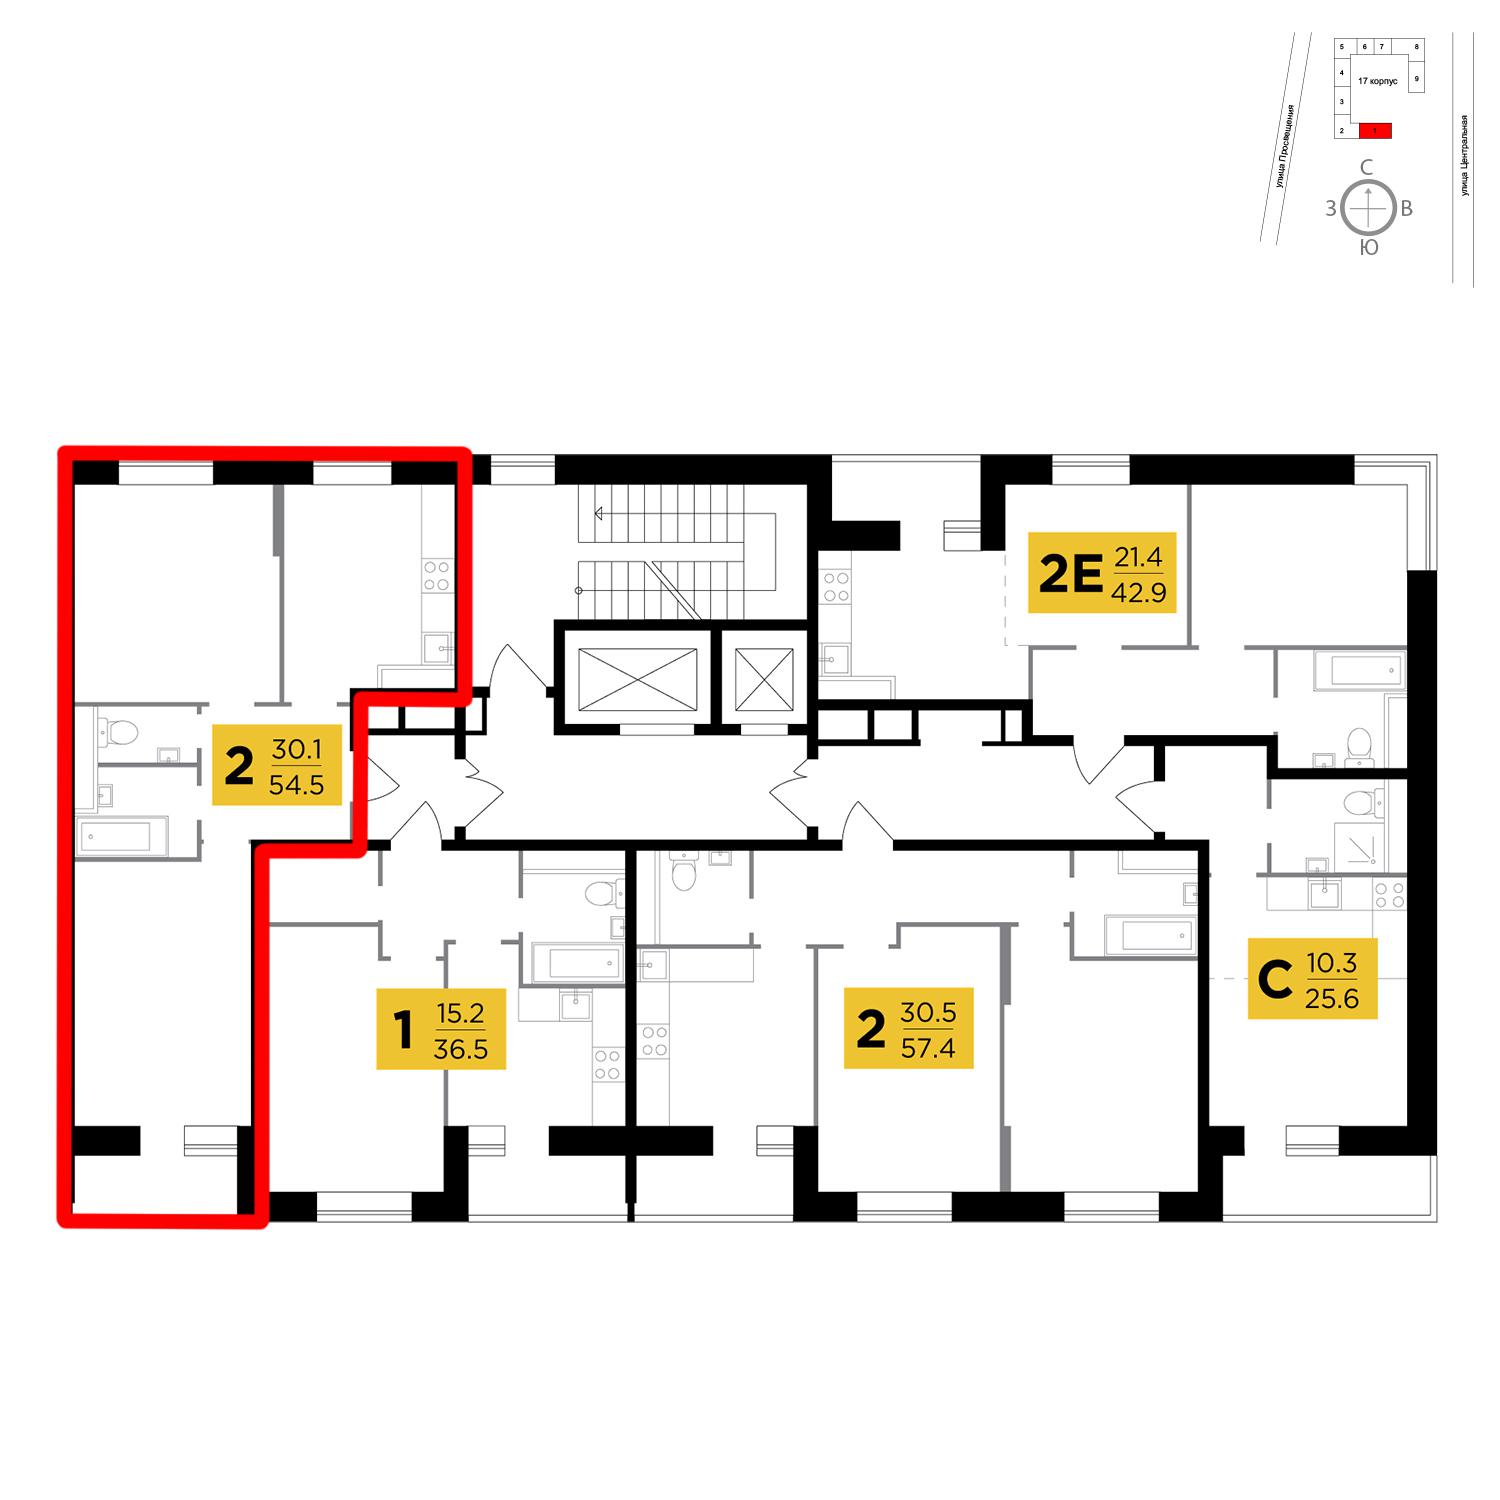 Продаётся 2-комнатная квартира в новостройке 54.5 кв.м. этаж 10/16 за 4 589 717 руб 